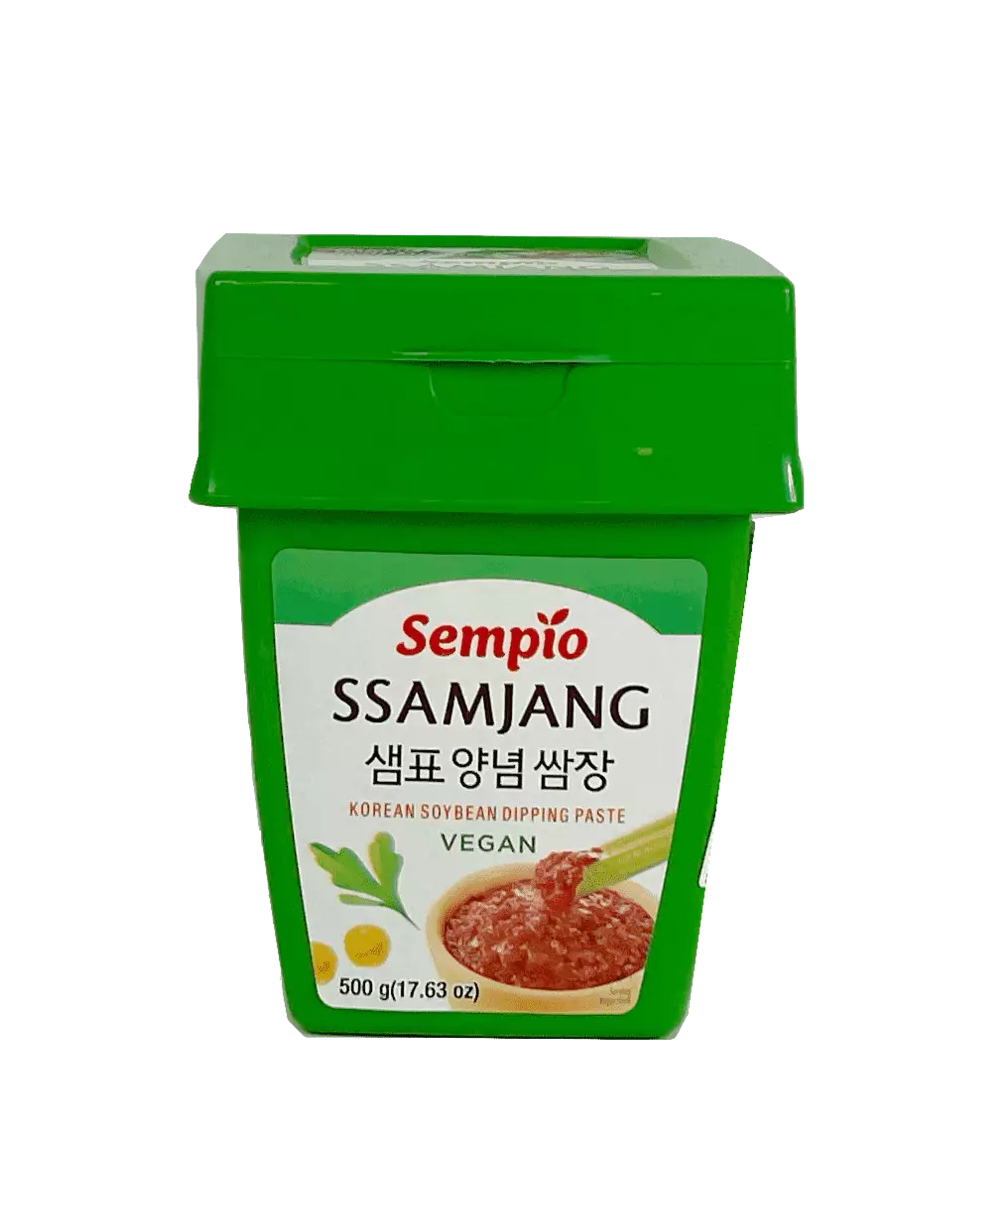 黄豆酱 Ssamjang 500g Sempio 韩国